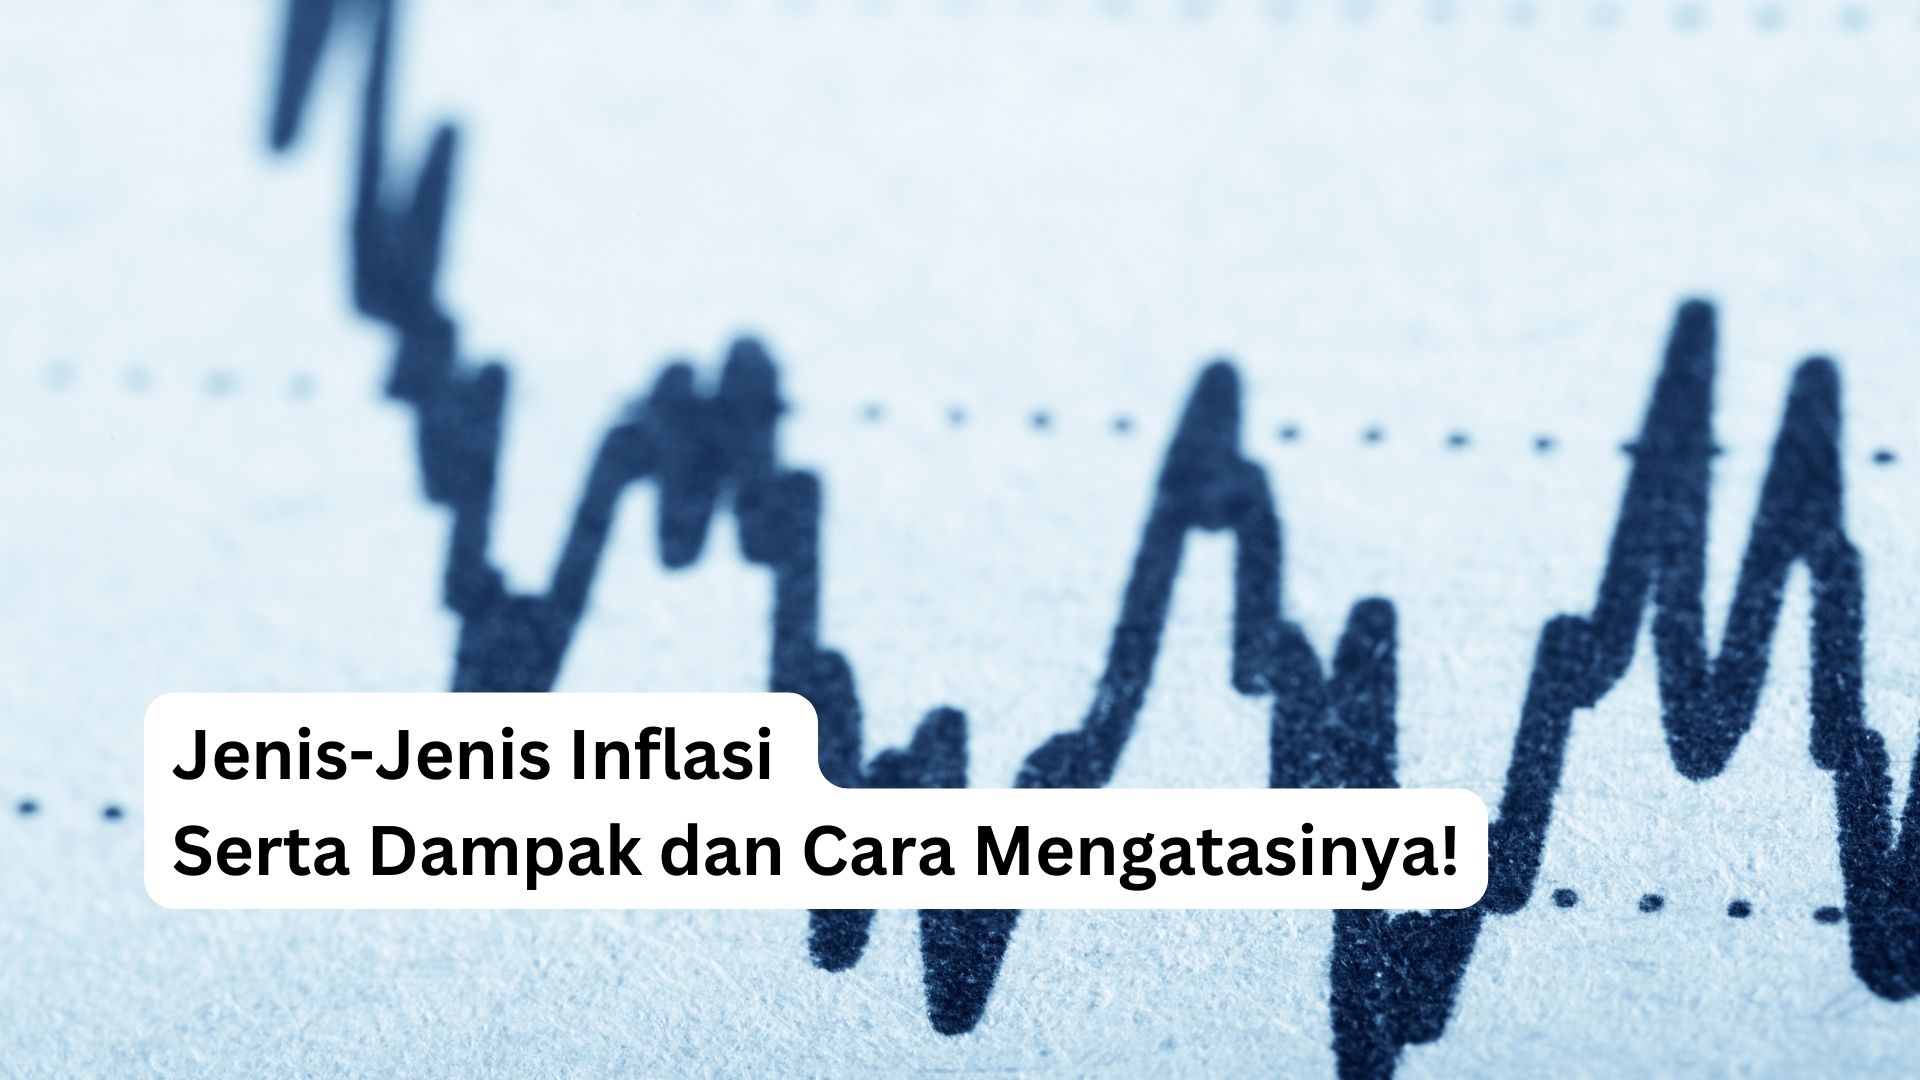 You are currently viewing Jenis-Jenis Inflasi Serta Dampak dan Cara Mengatasinya!